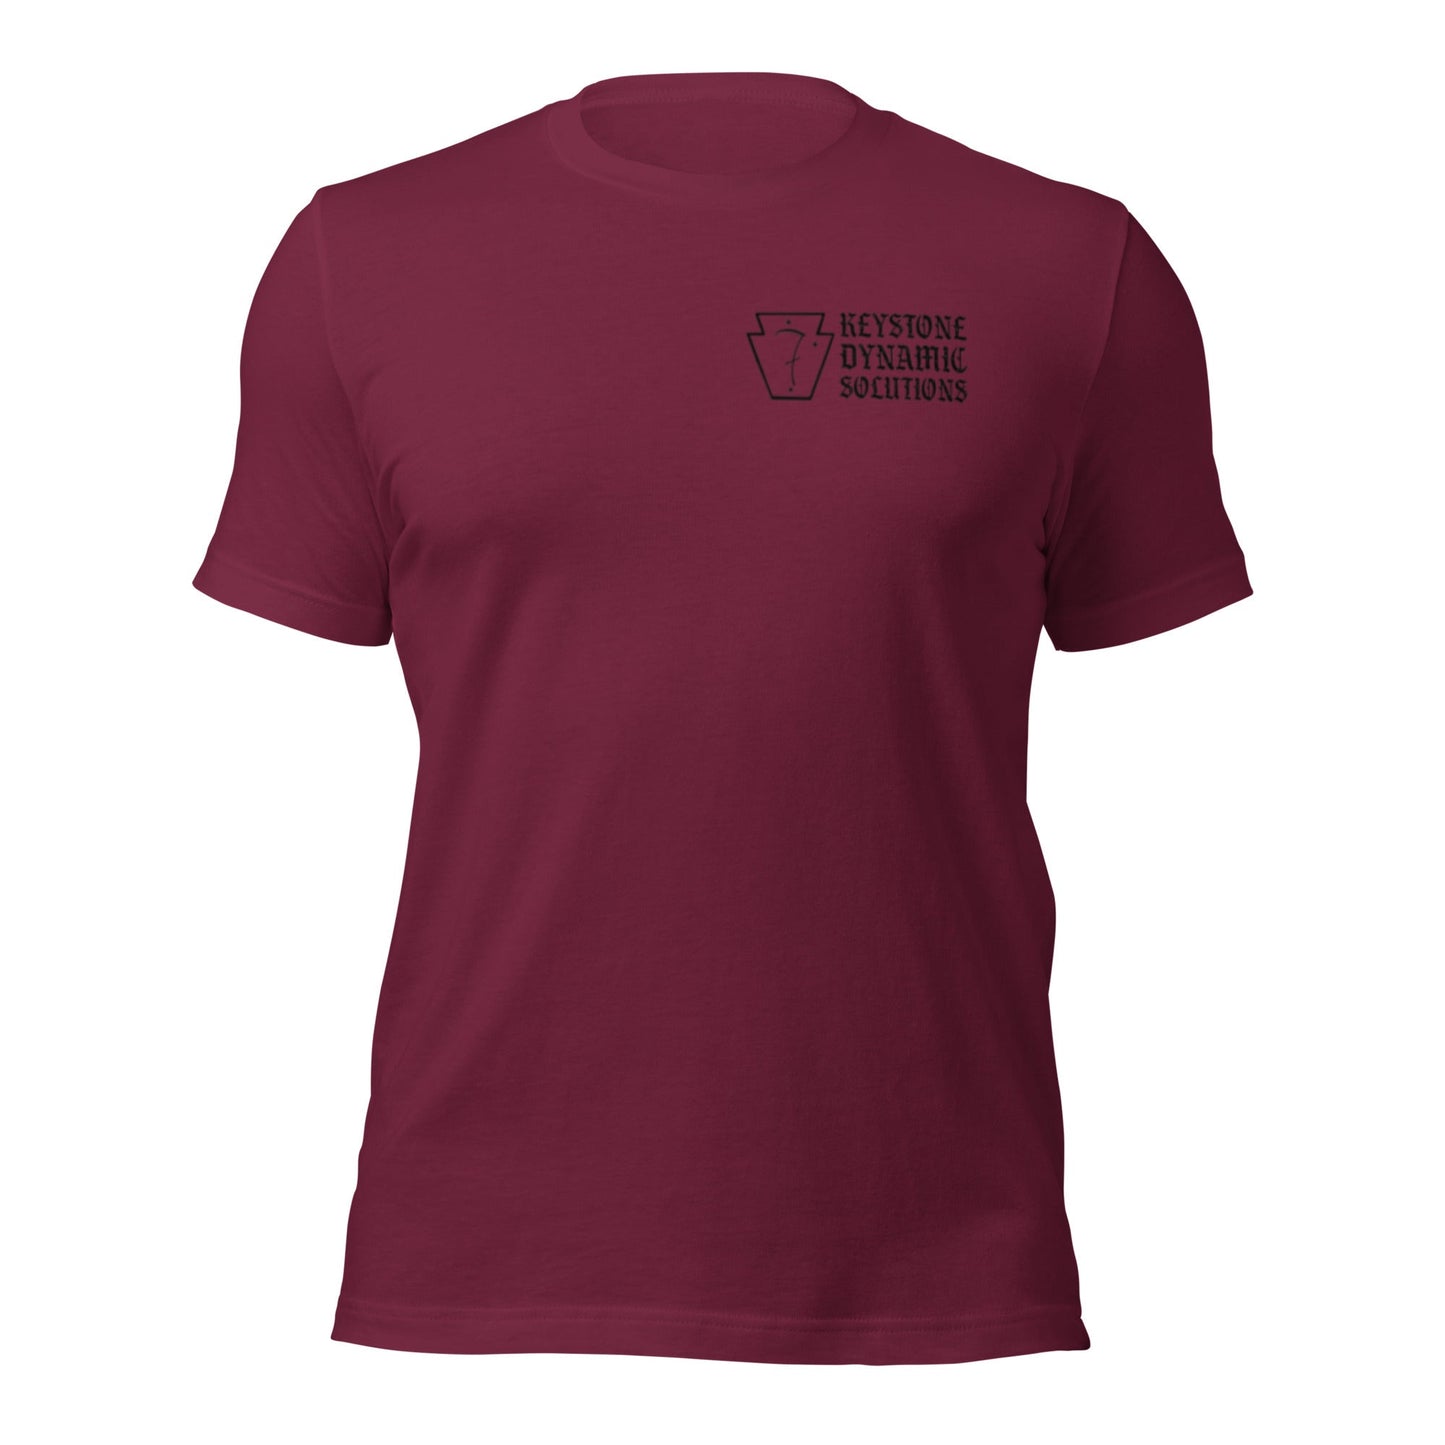 Three Rivers Minimalist shirts - Dark logo.